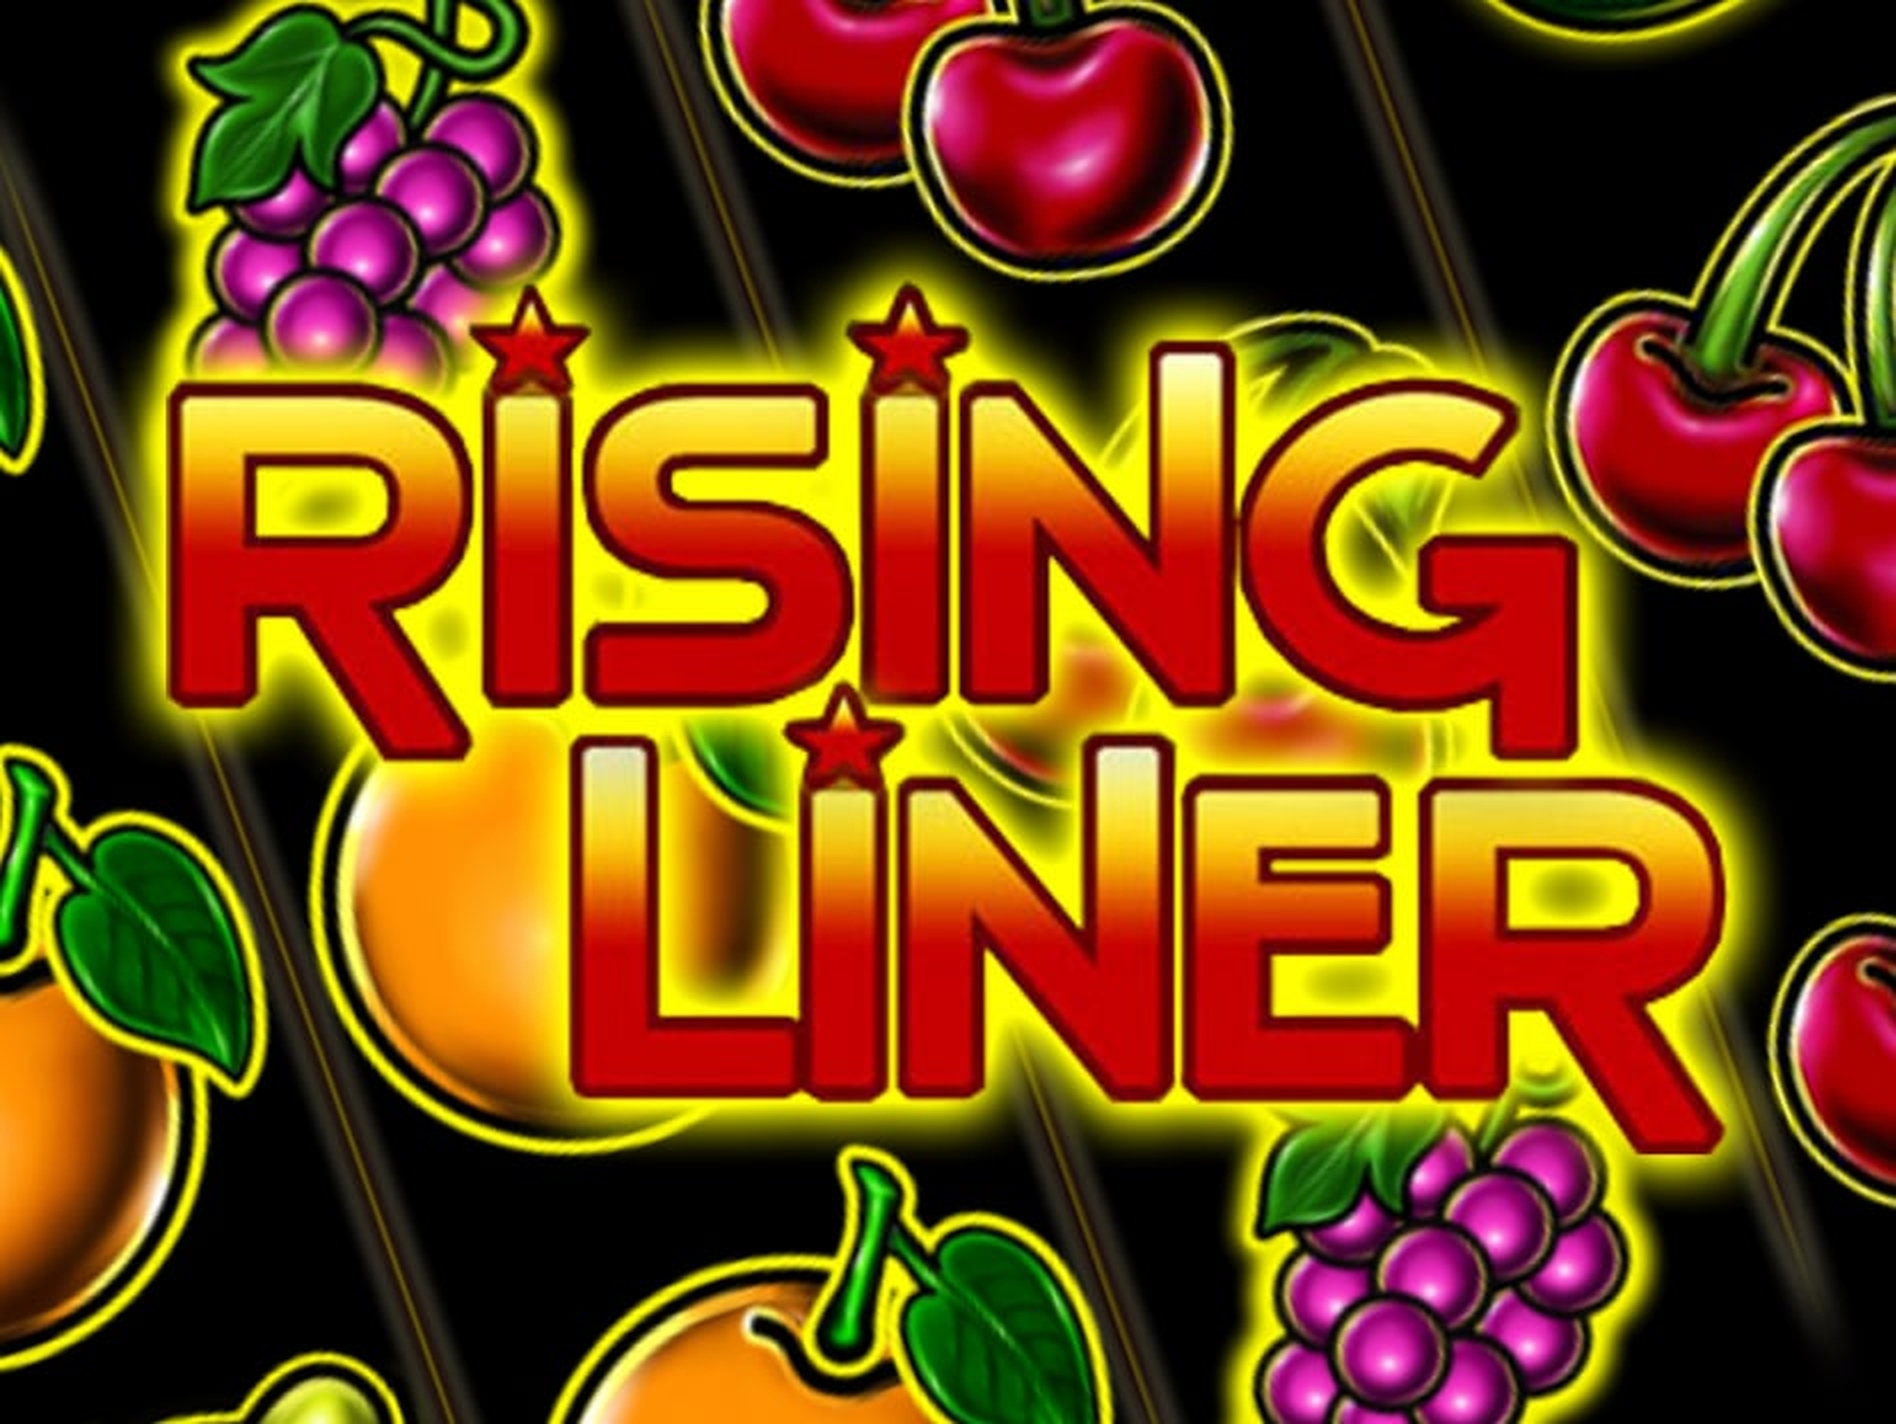 Rising Liner demo